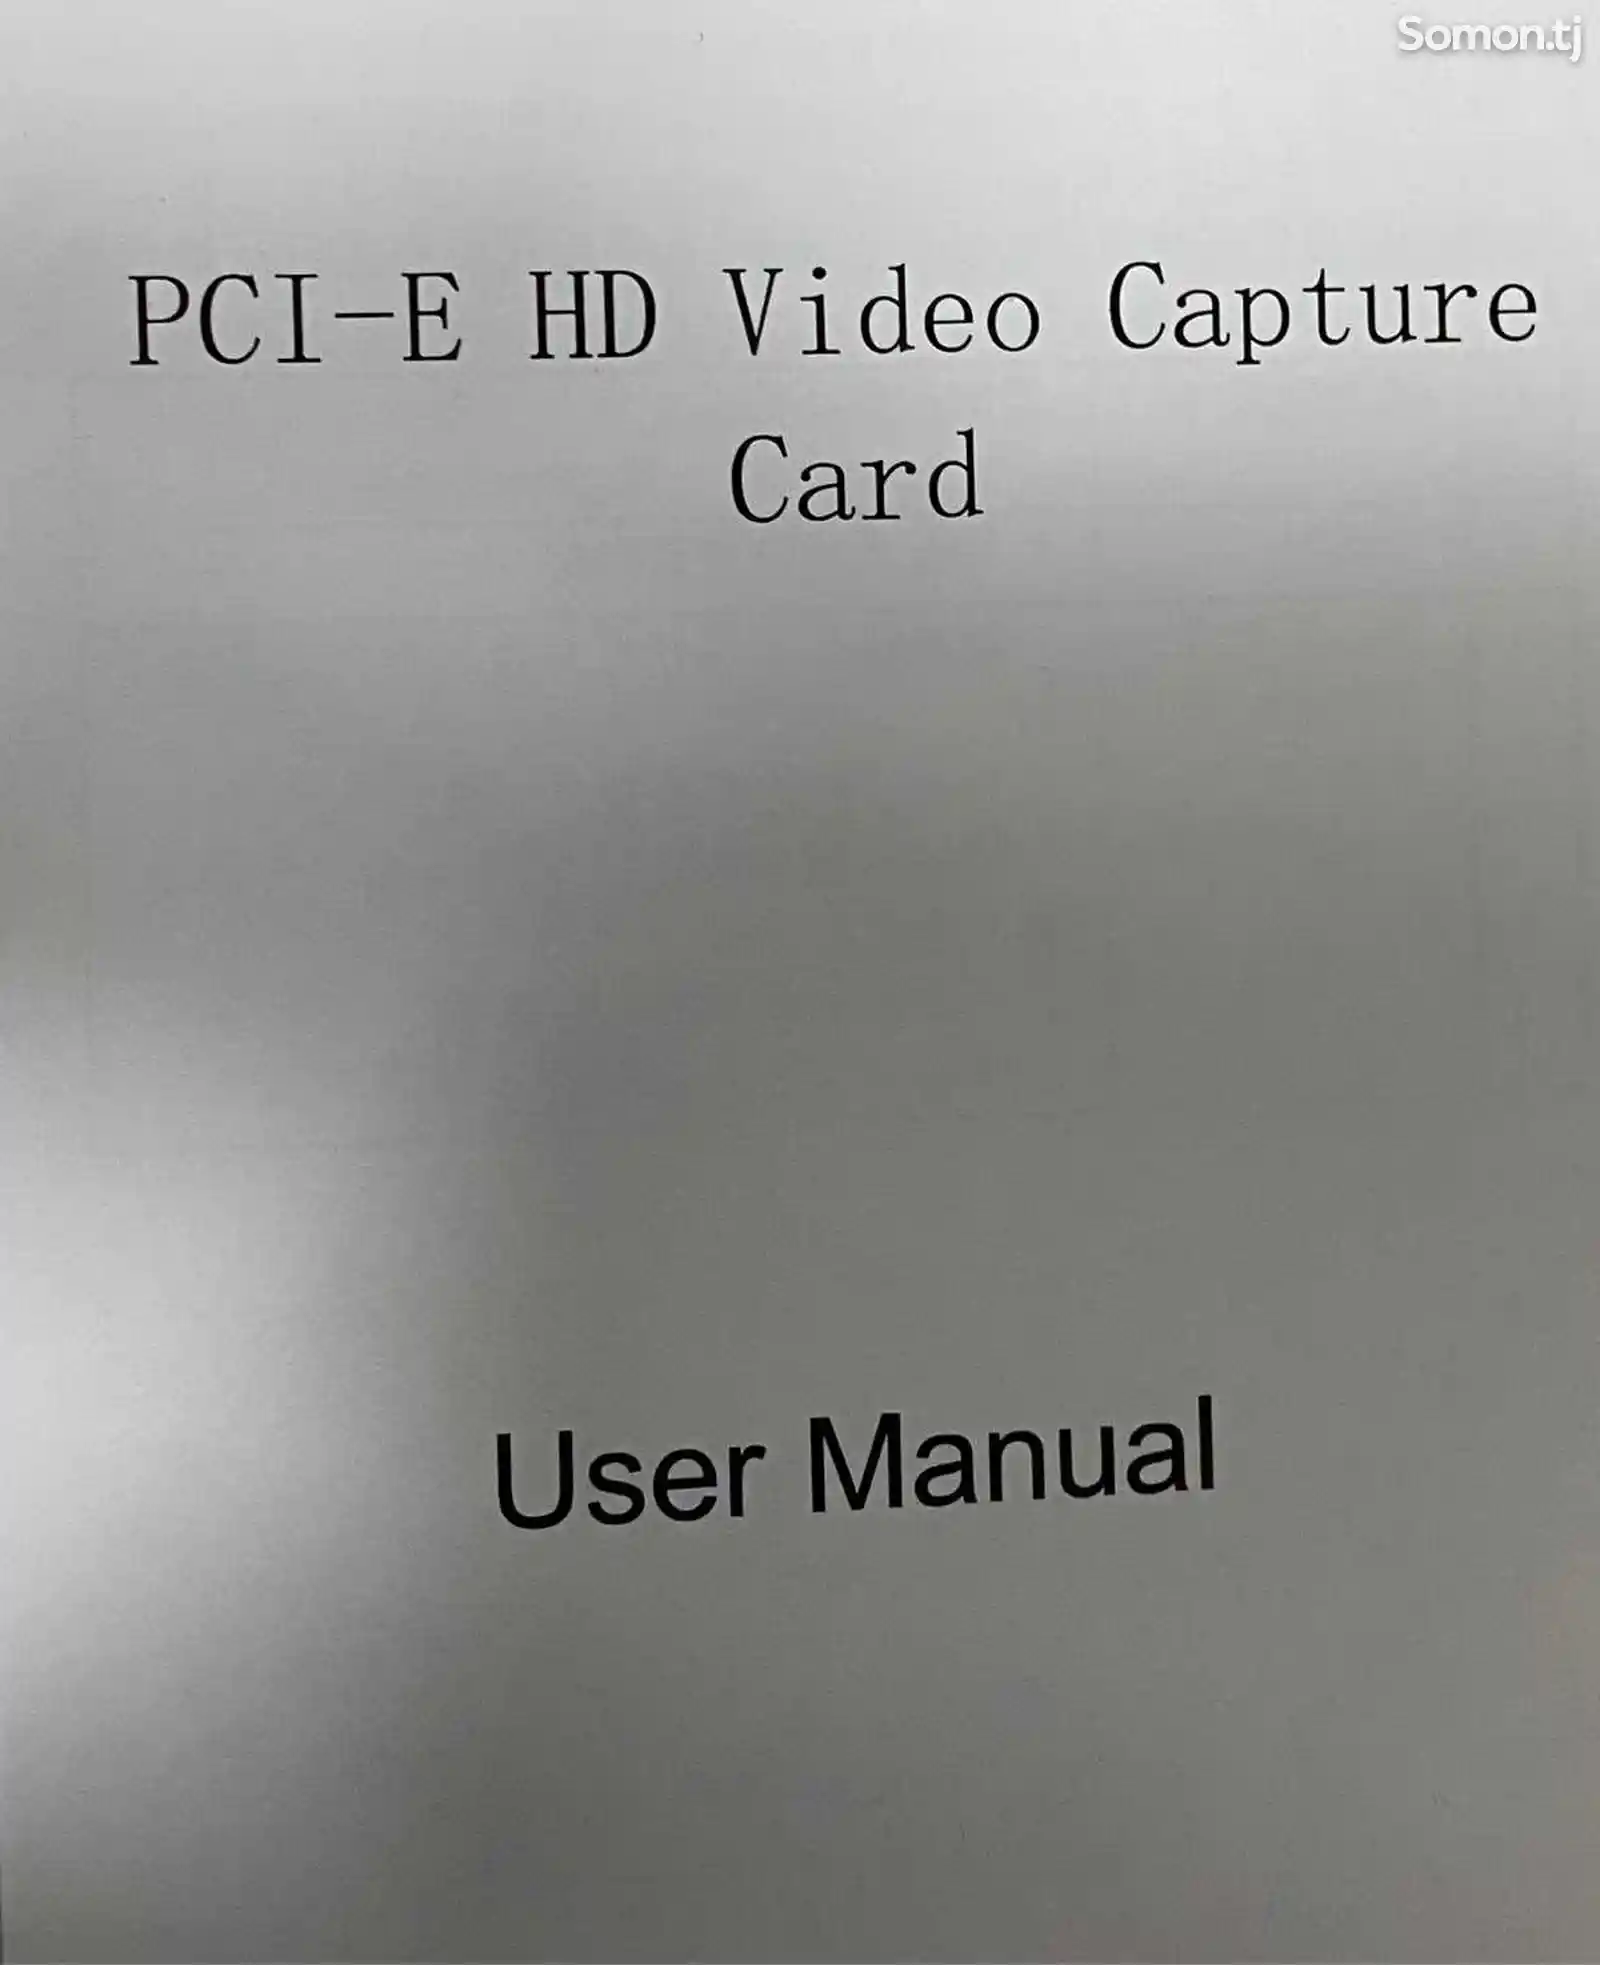 Карта видеозахвата PCI-e HDMI-3